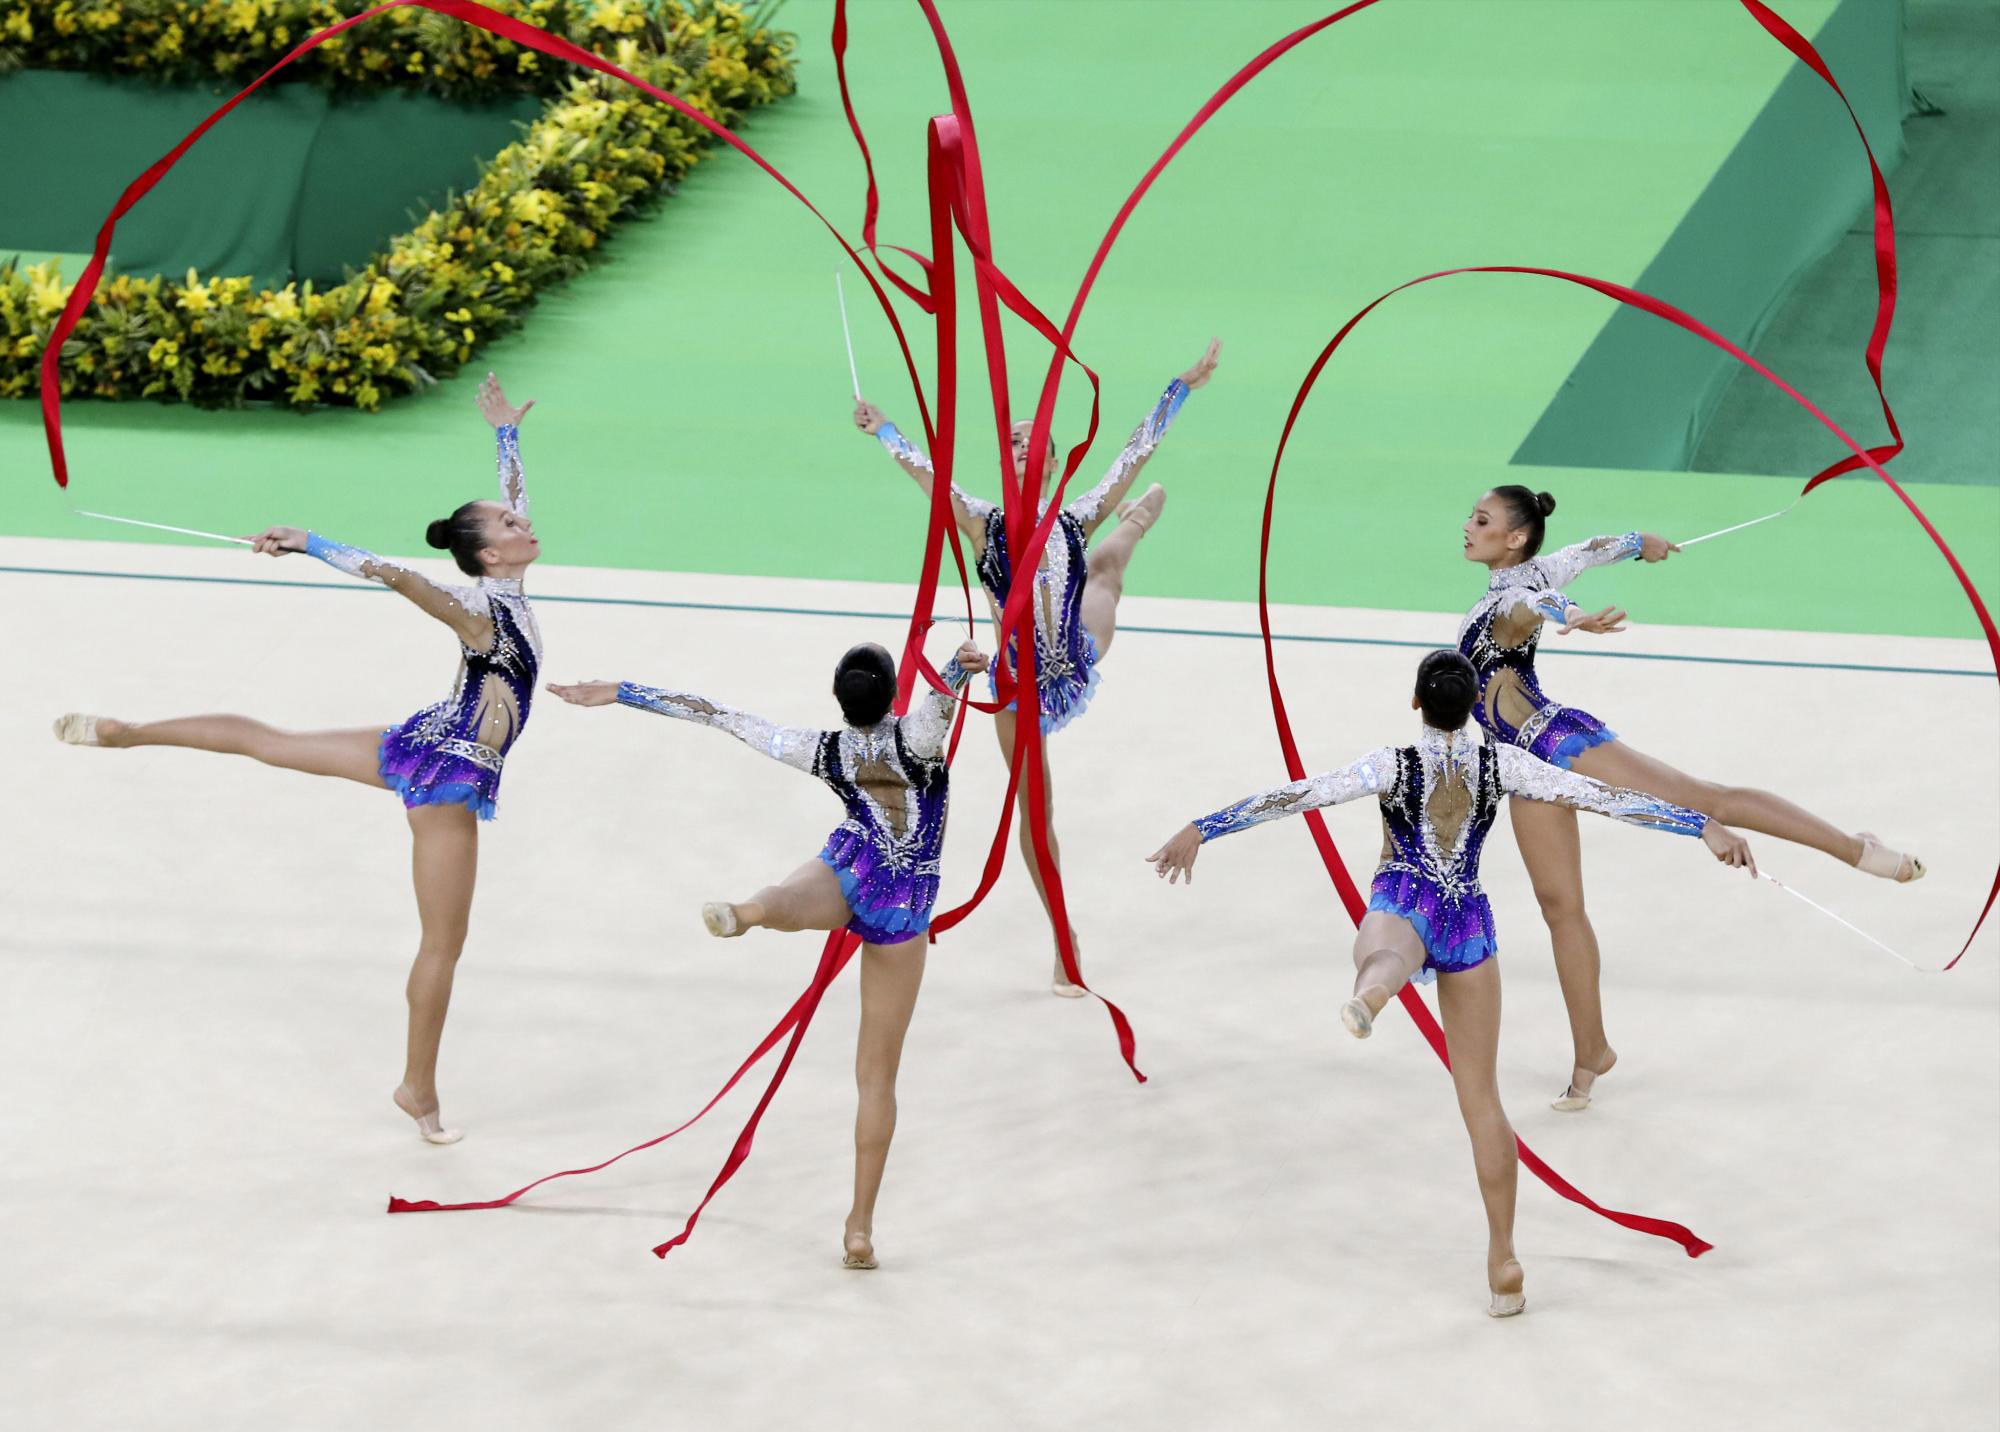 Gimnasia rítmica en Río 2016